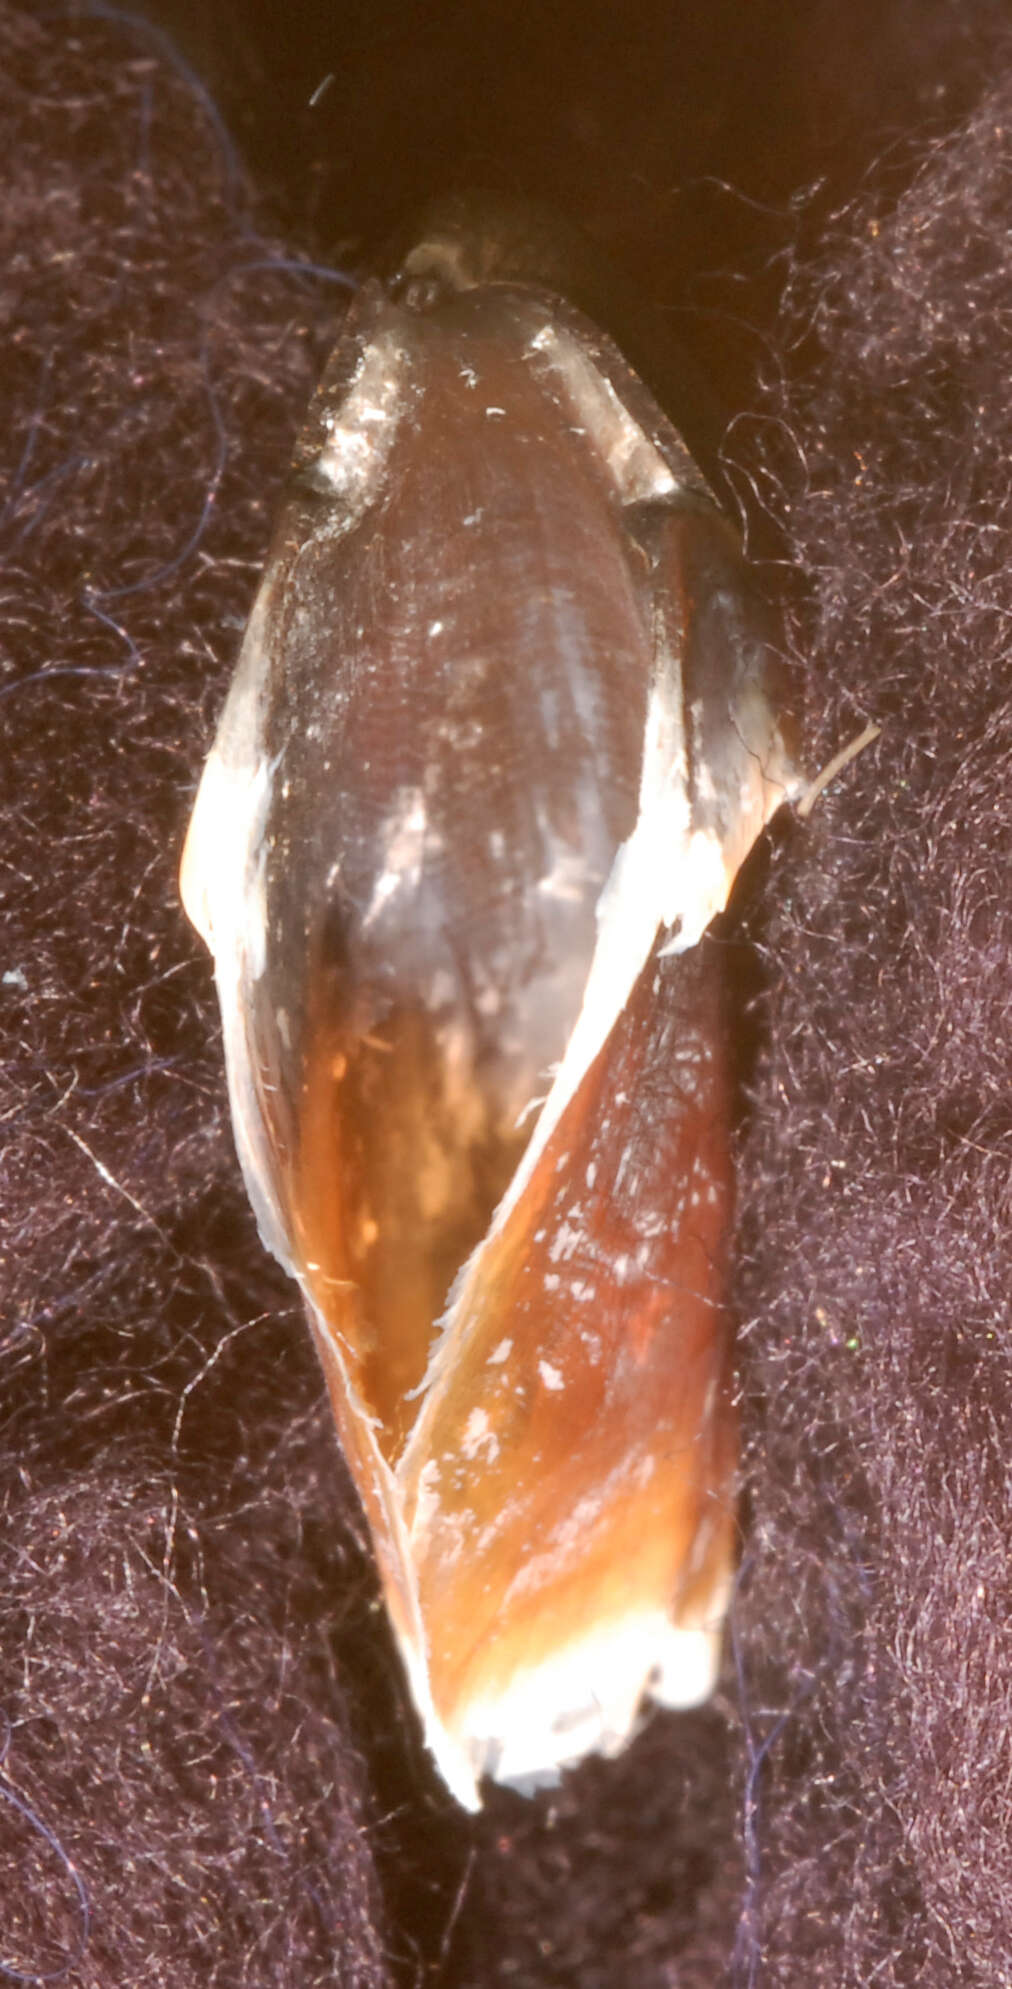 Image of Atlantic bird squid